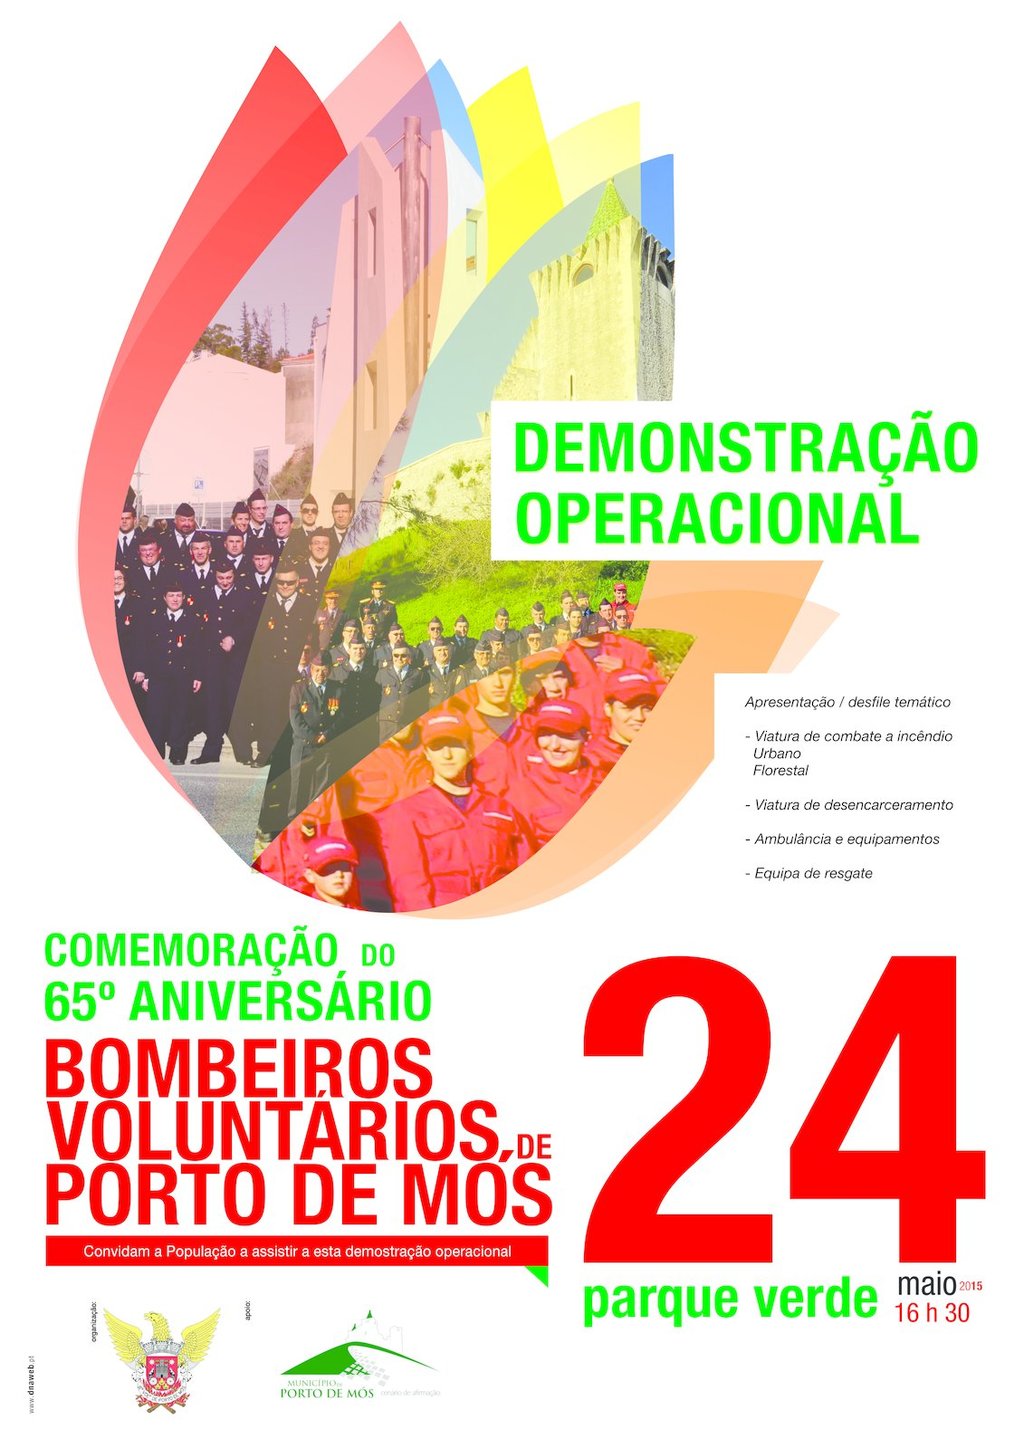 Comemoração do 65º aniversário dos Bombeiros Voluntários de Porto de Mós